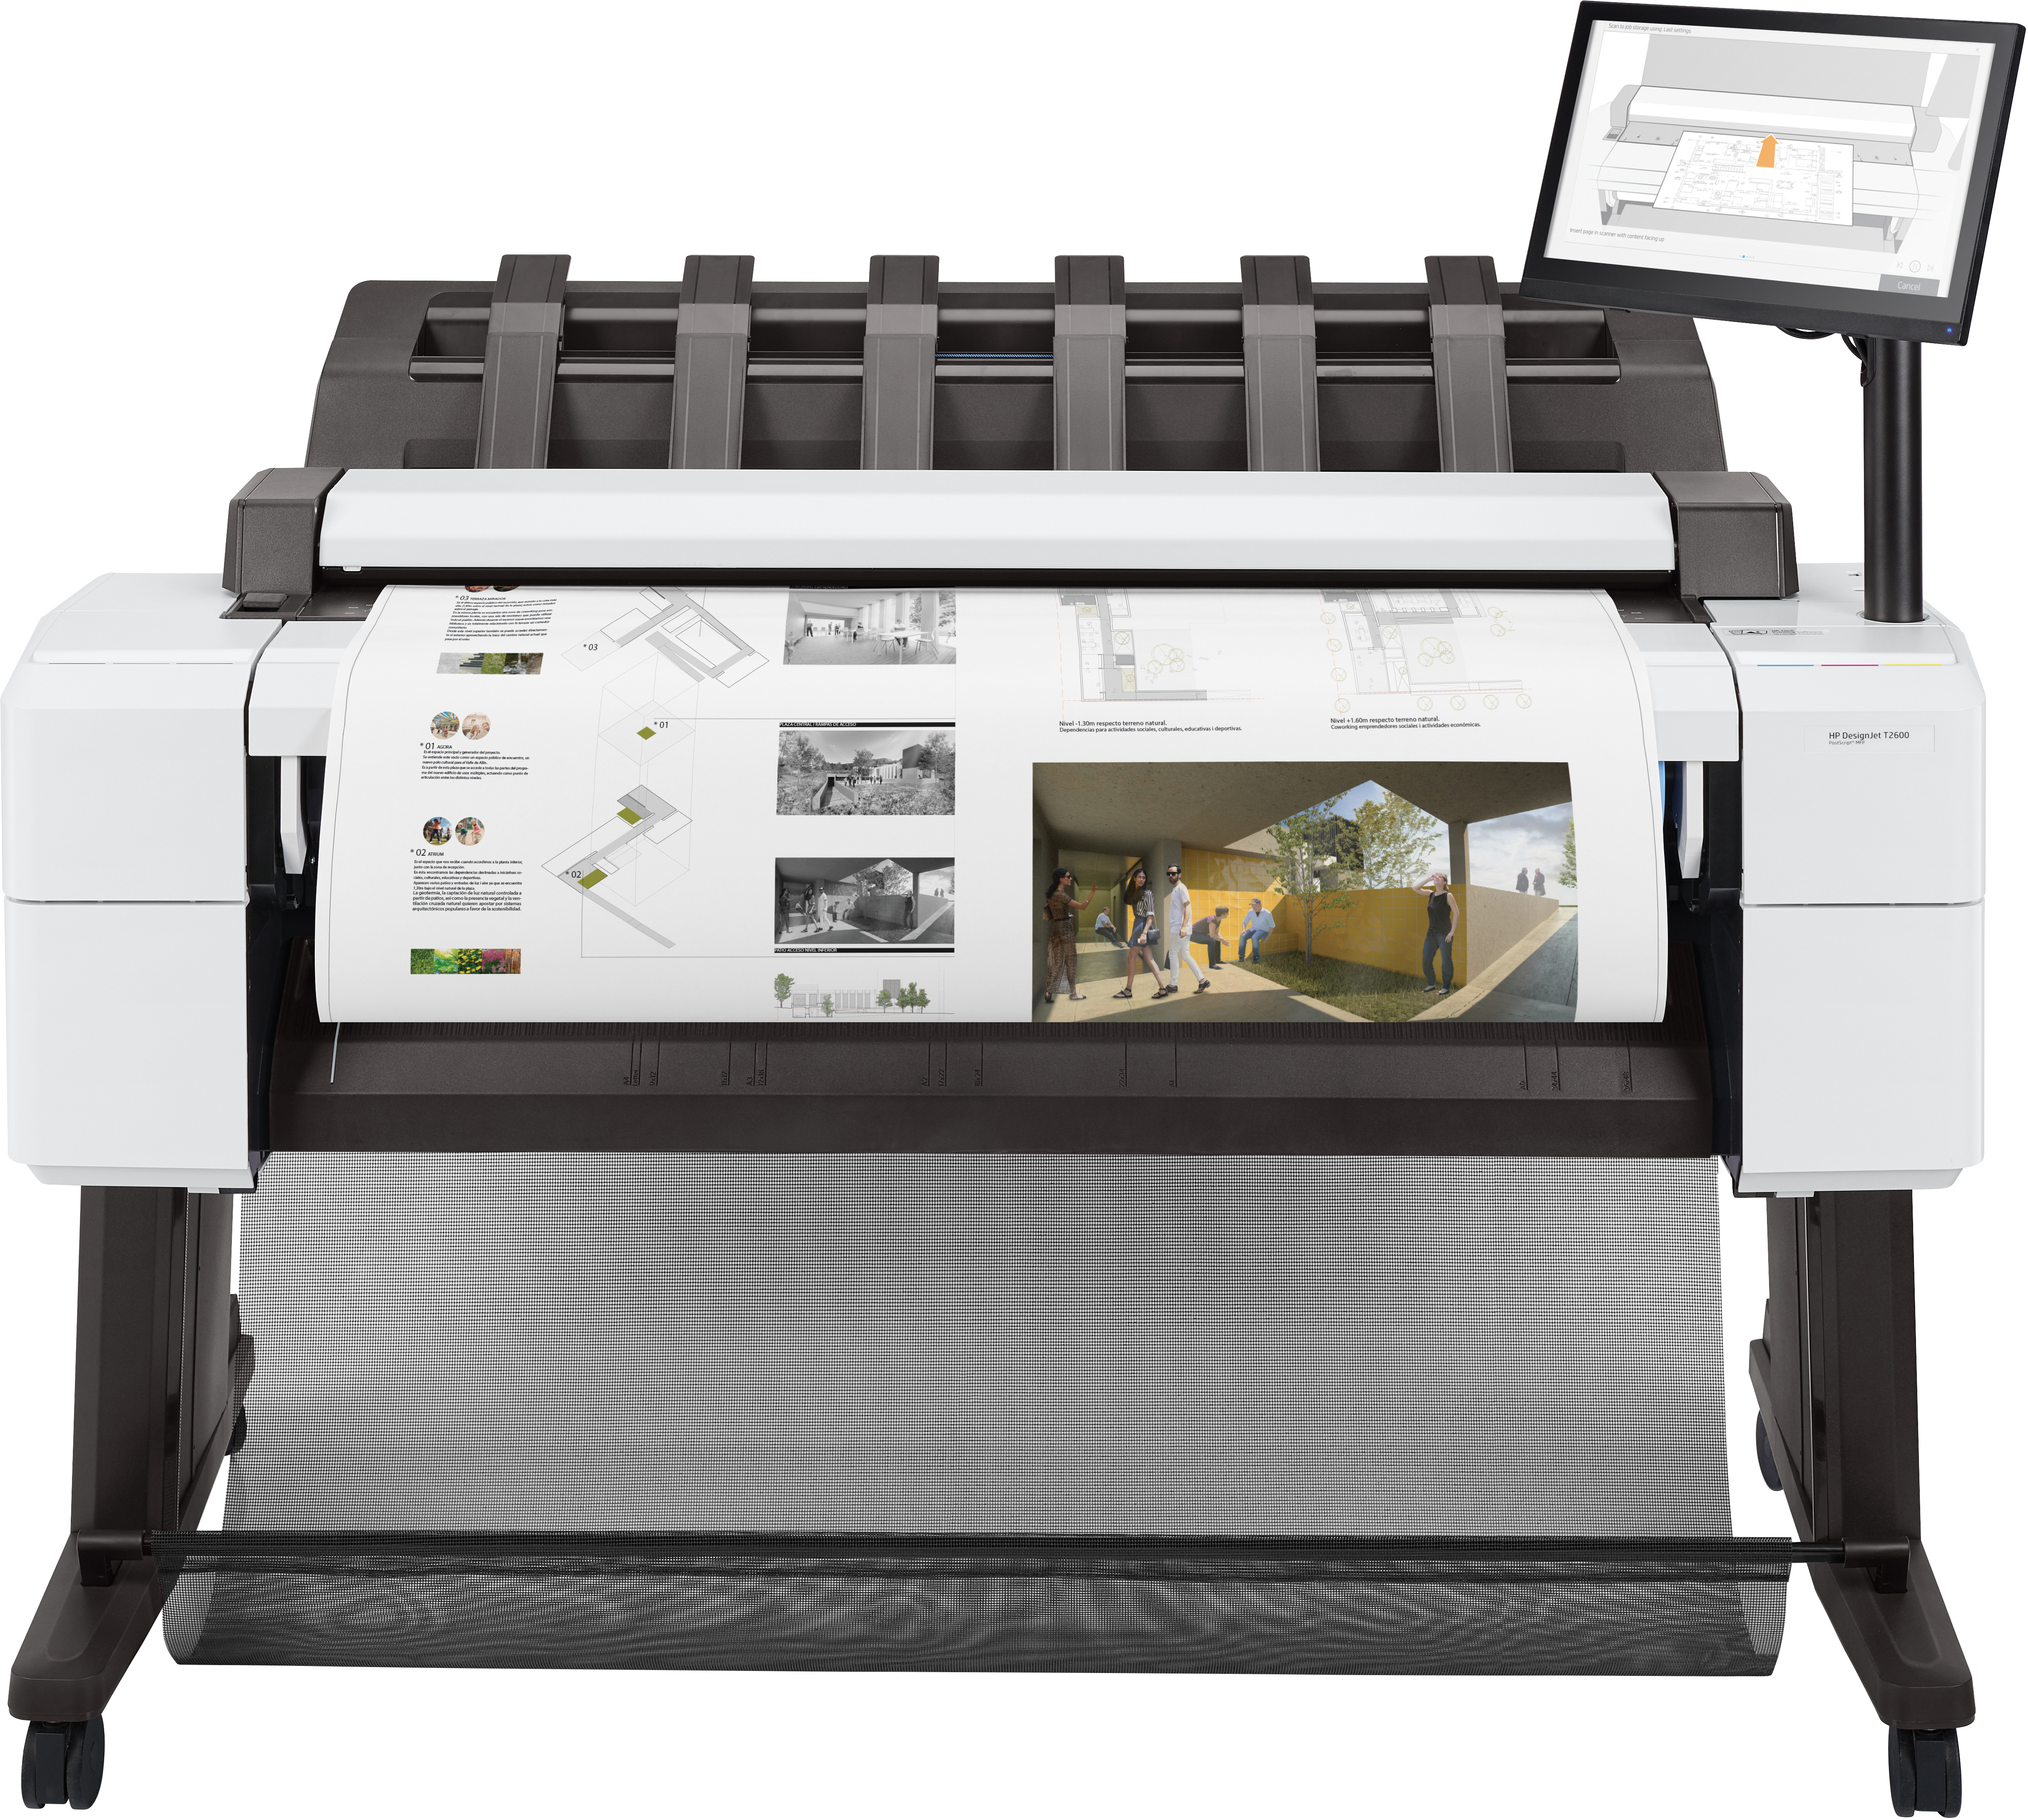 HP Designjet T2600 impresora de gran formato Inyección de tinta térmica Color 2400 x 1200 DPI A0 (841 x 1189 mm) Ethernet